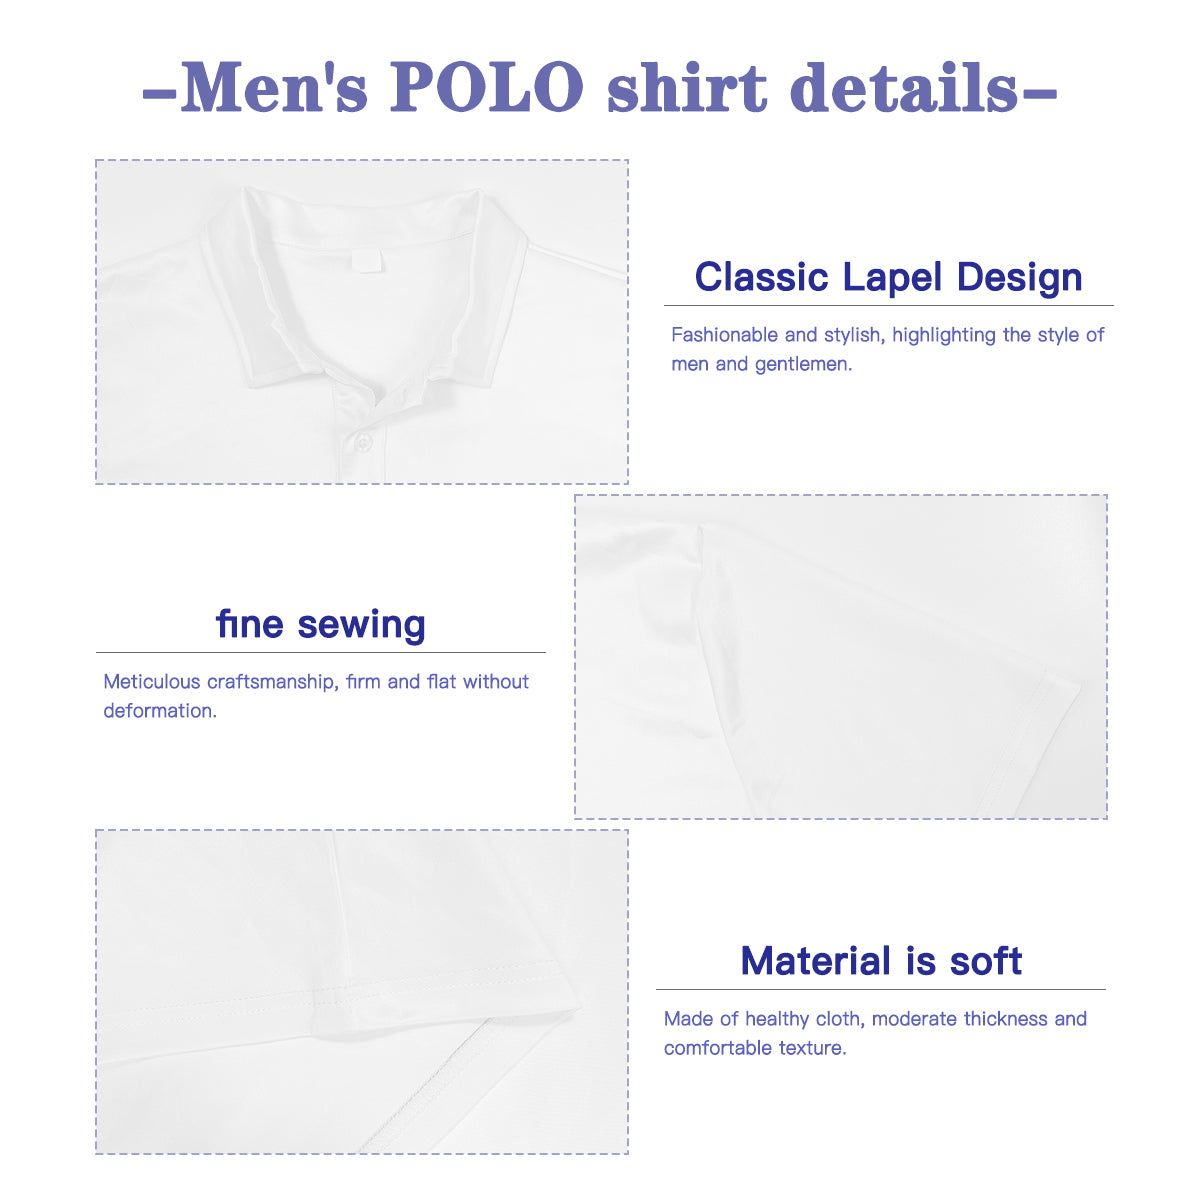 Ombre Shirt Men, Polo Shirt Men, Men's Polo Shirt, Rainbow shirt Men, Rainbow Ombre Shirt, Polo Top Men, Green Pink Ombre Shirt